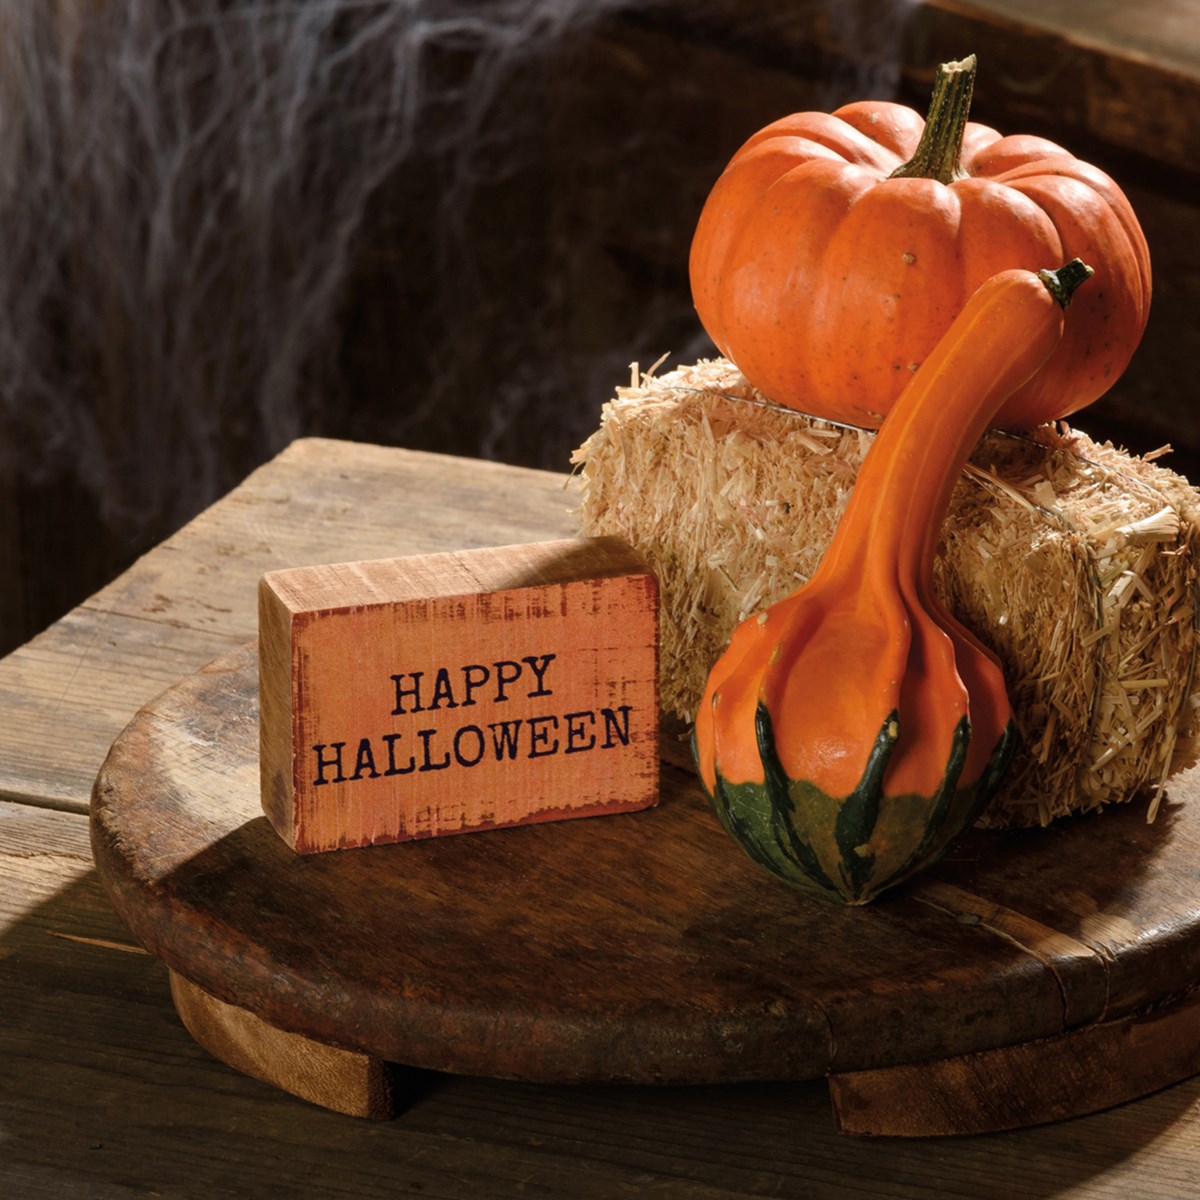 Happy Halloween Block Sign - Wood